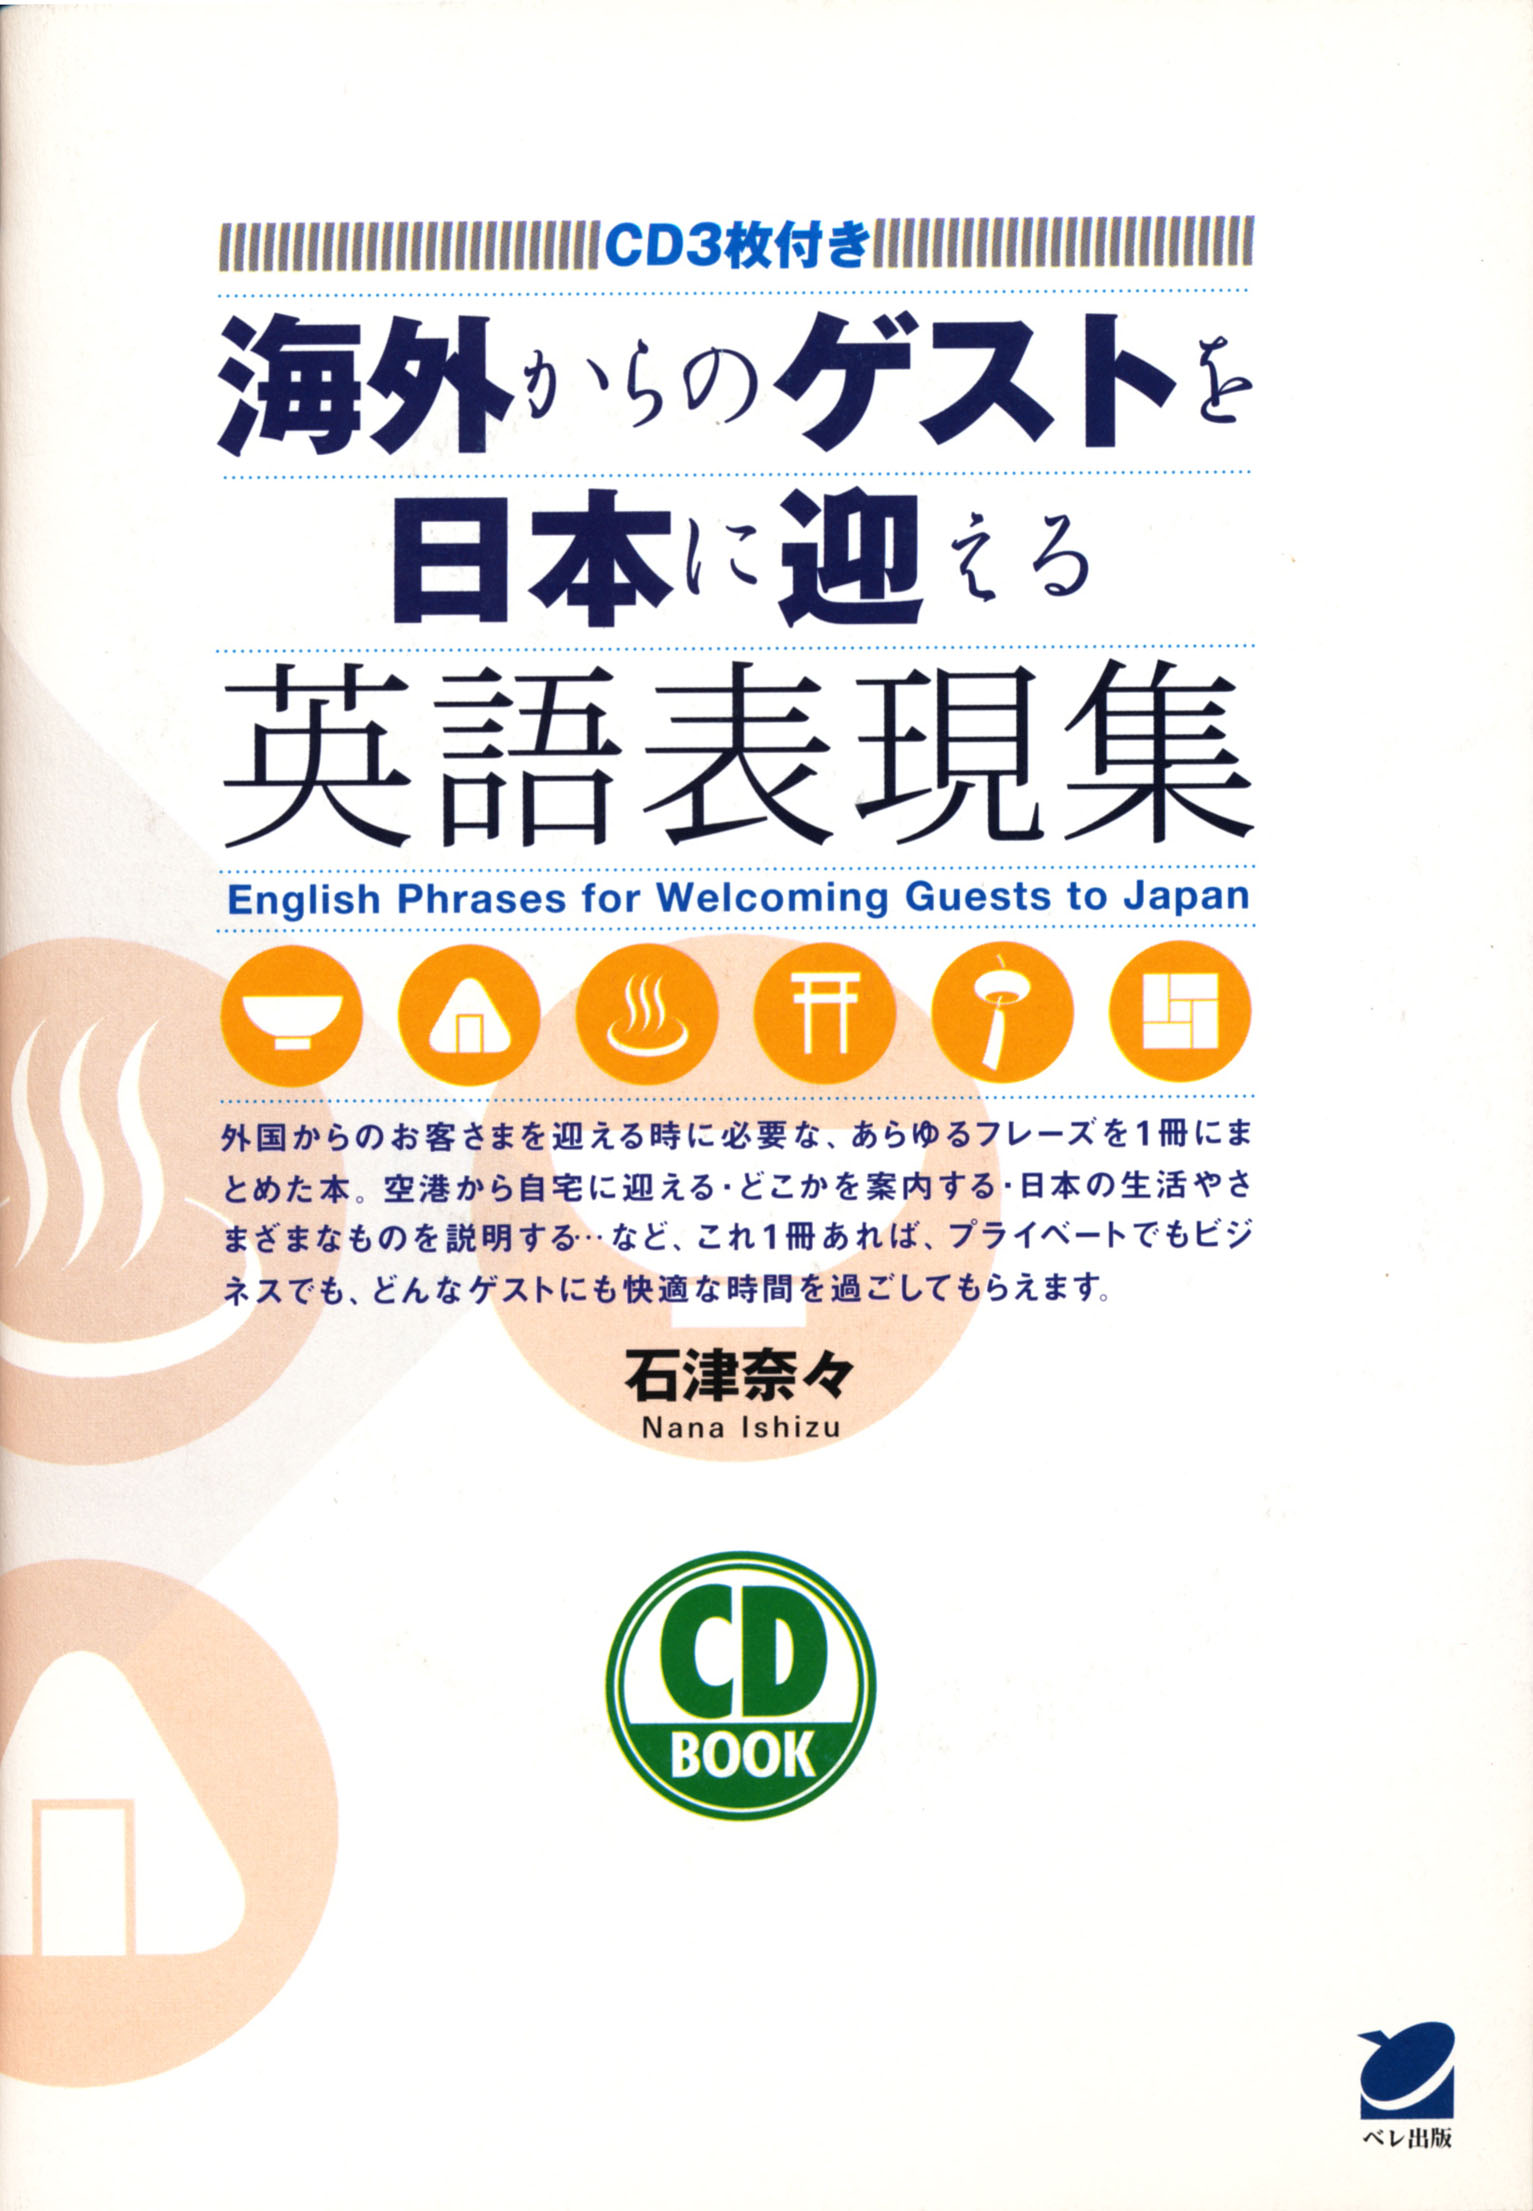 海外からのゲストを日本に迎える英語表現集 CD BOOK - いつも、学ぶ人の近くに【ベレ出版】